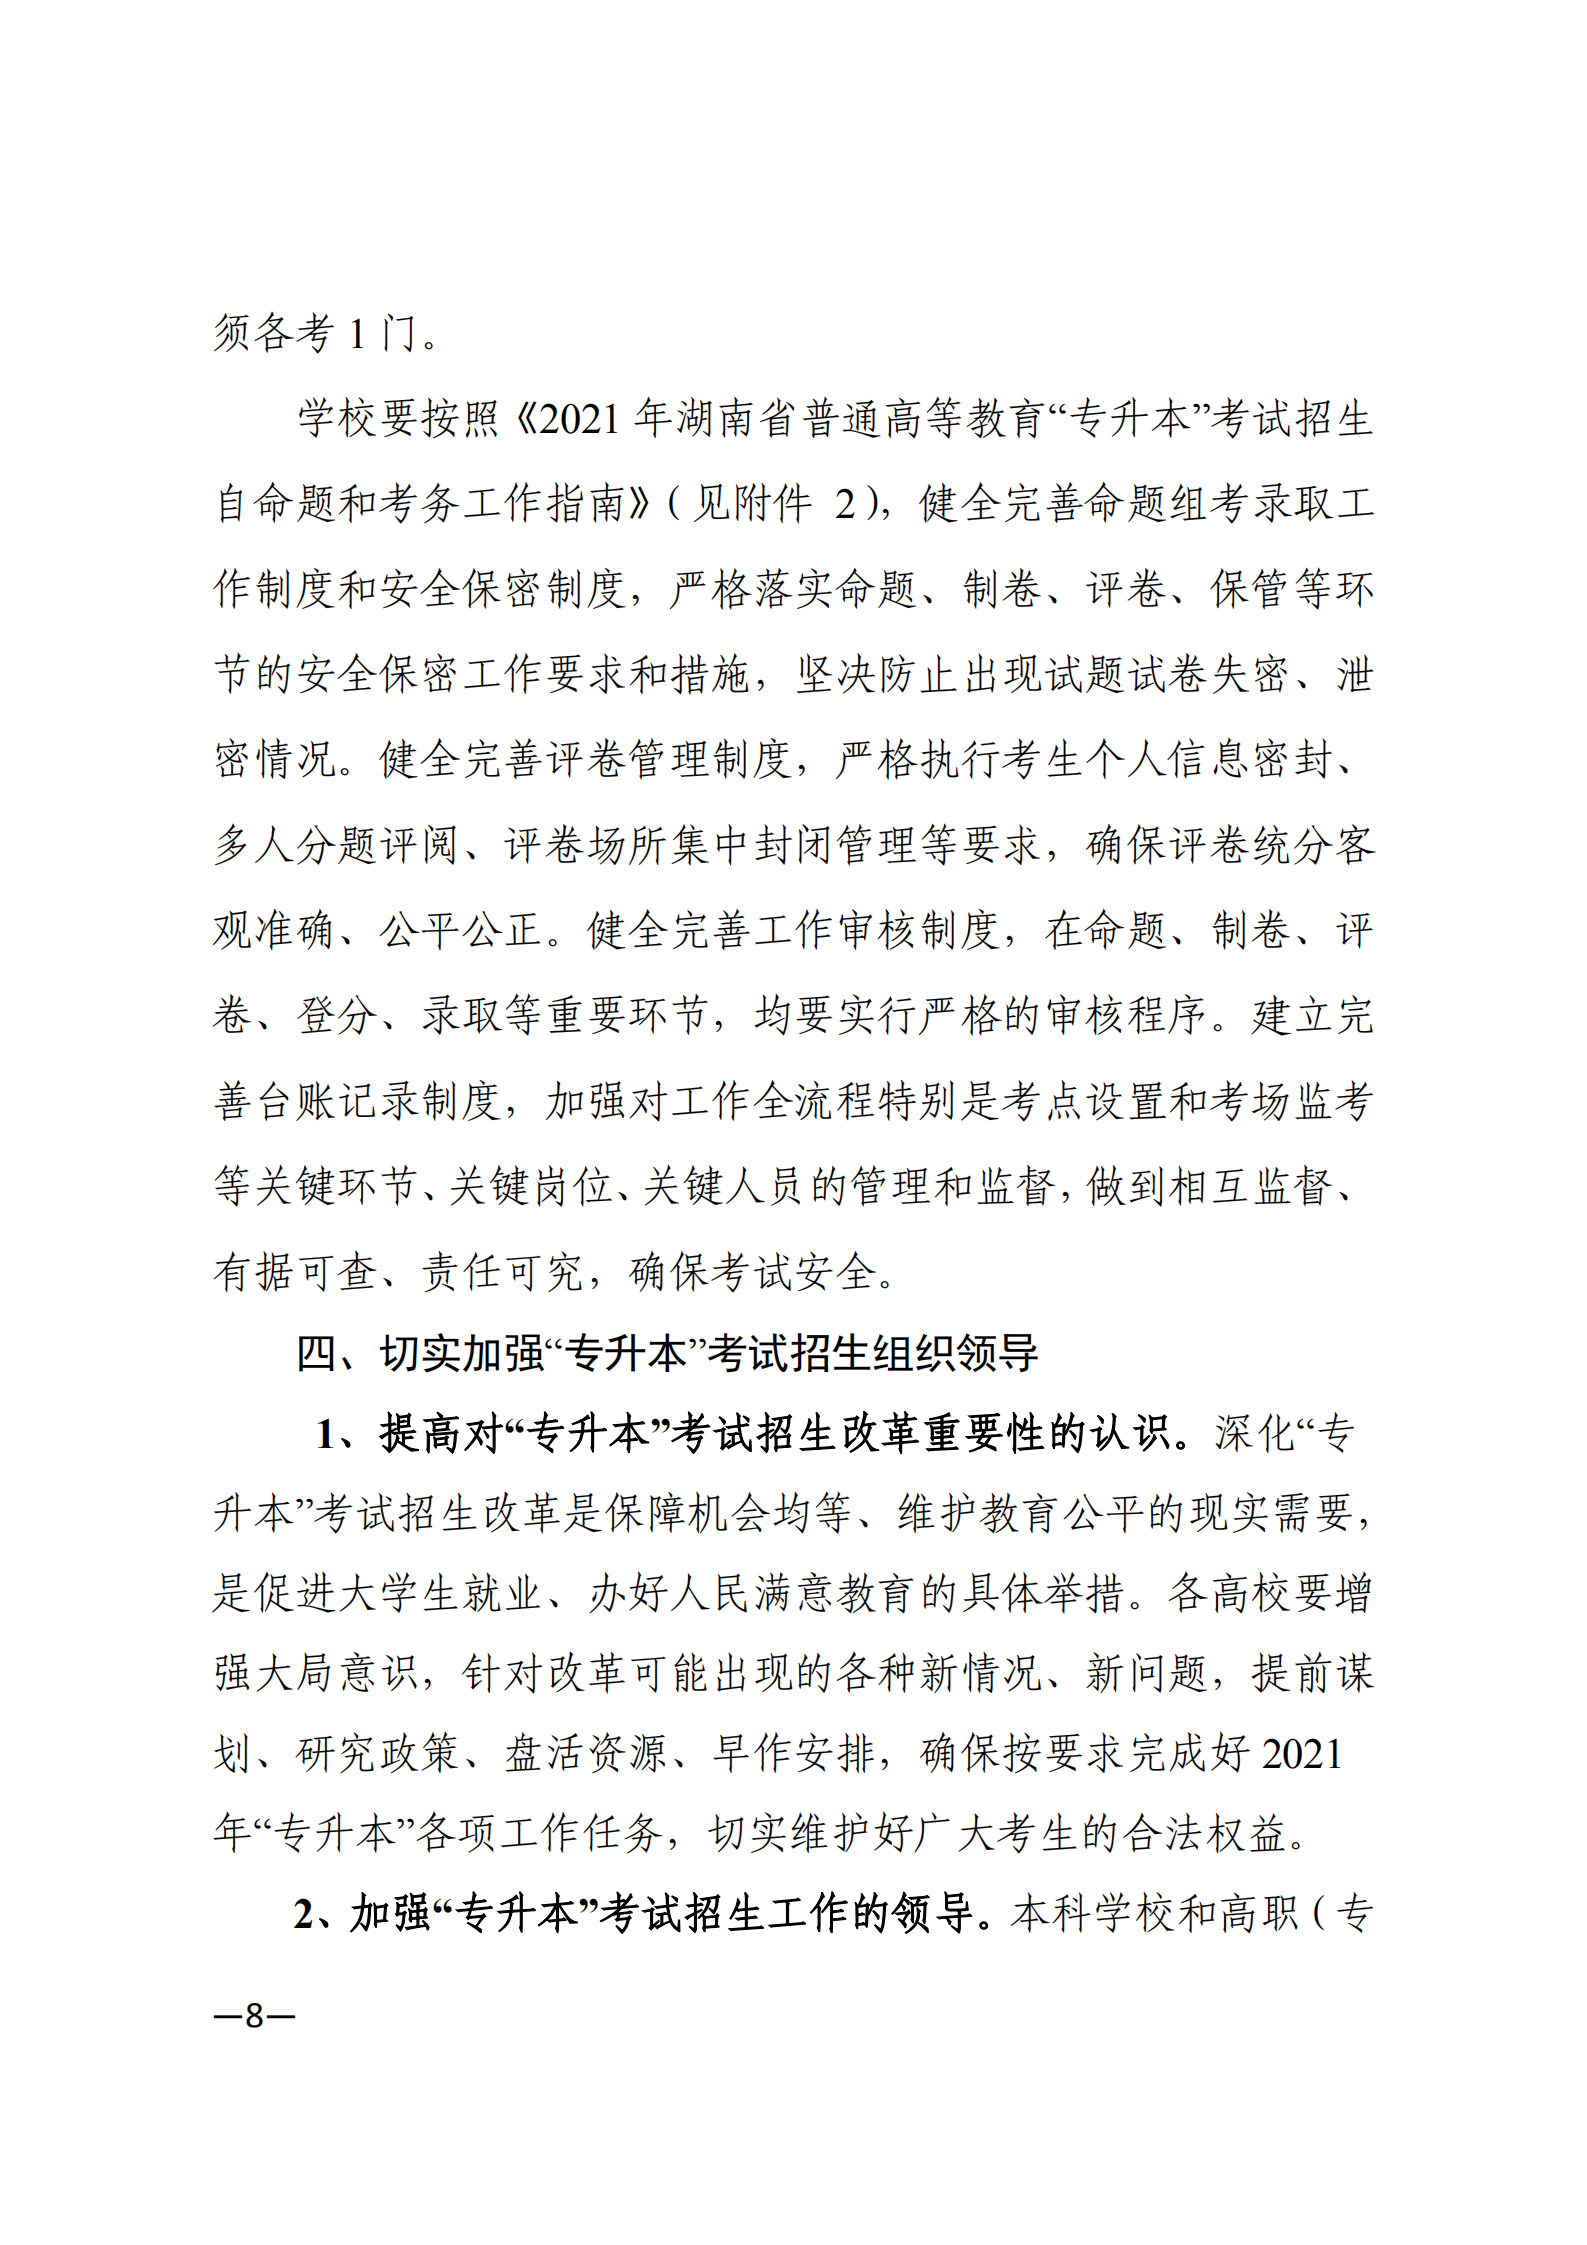 3_湘教发〔2021〕2号 关于印发《2021年湖南省普通高等教育“专升本”考试招生工作实施方案》的通知_07.png